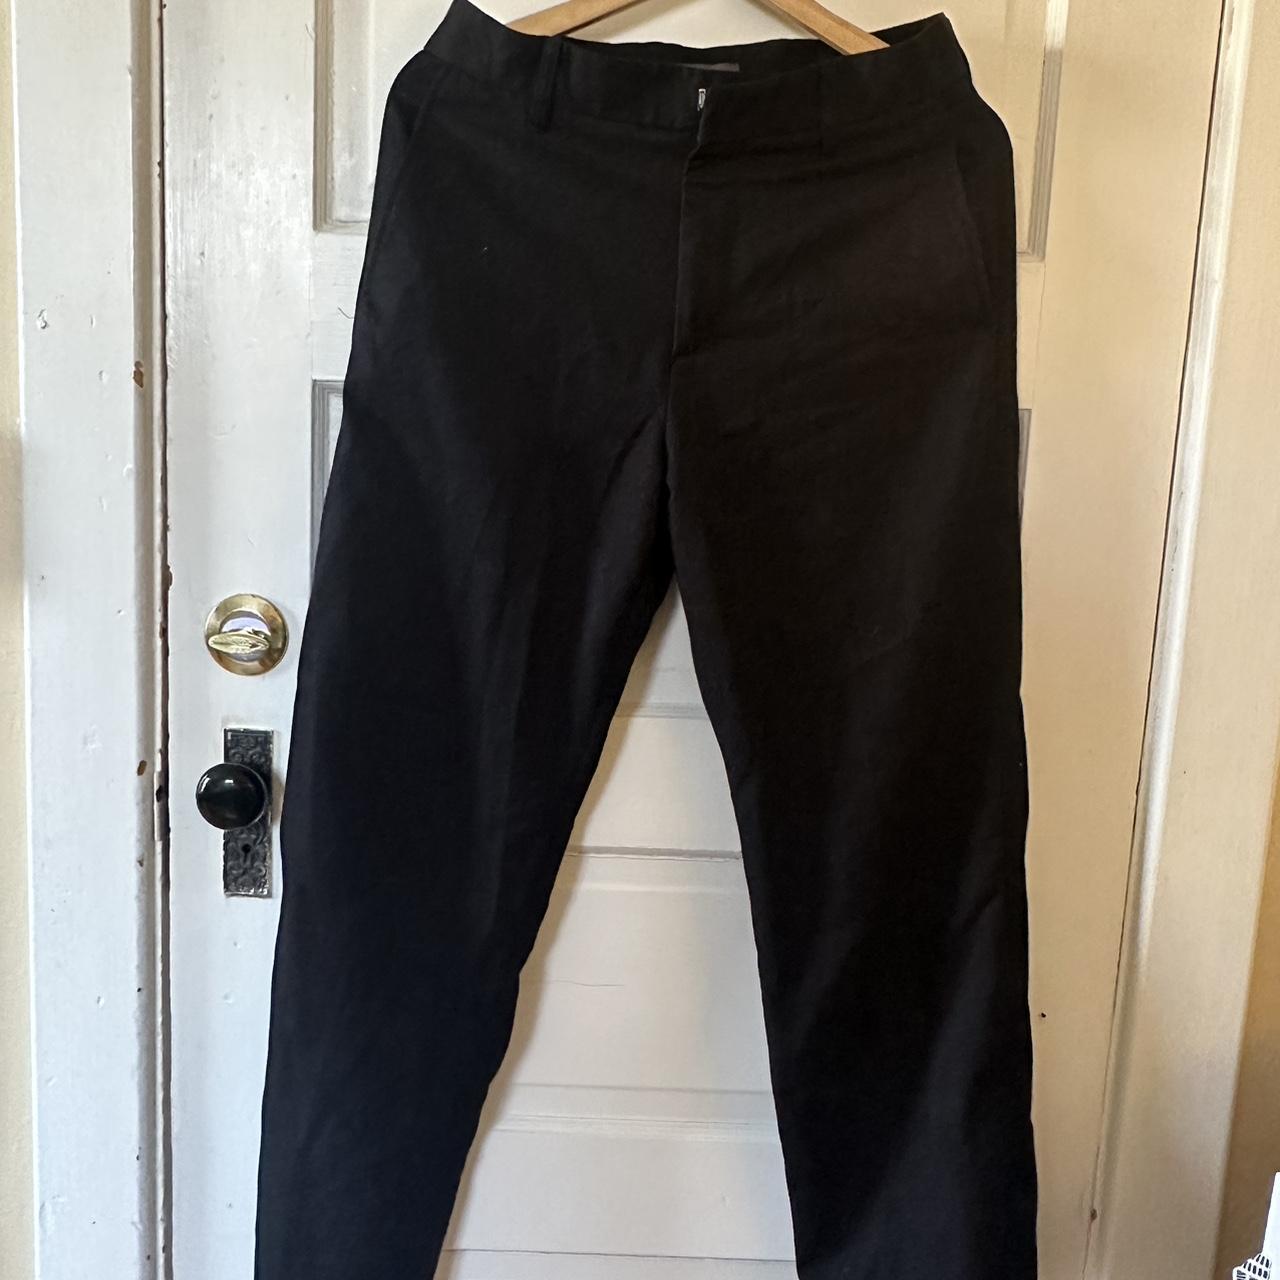 H&M Black Dress Pants Size 28 Good Condition - Depop